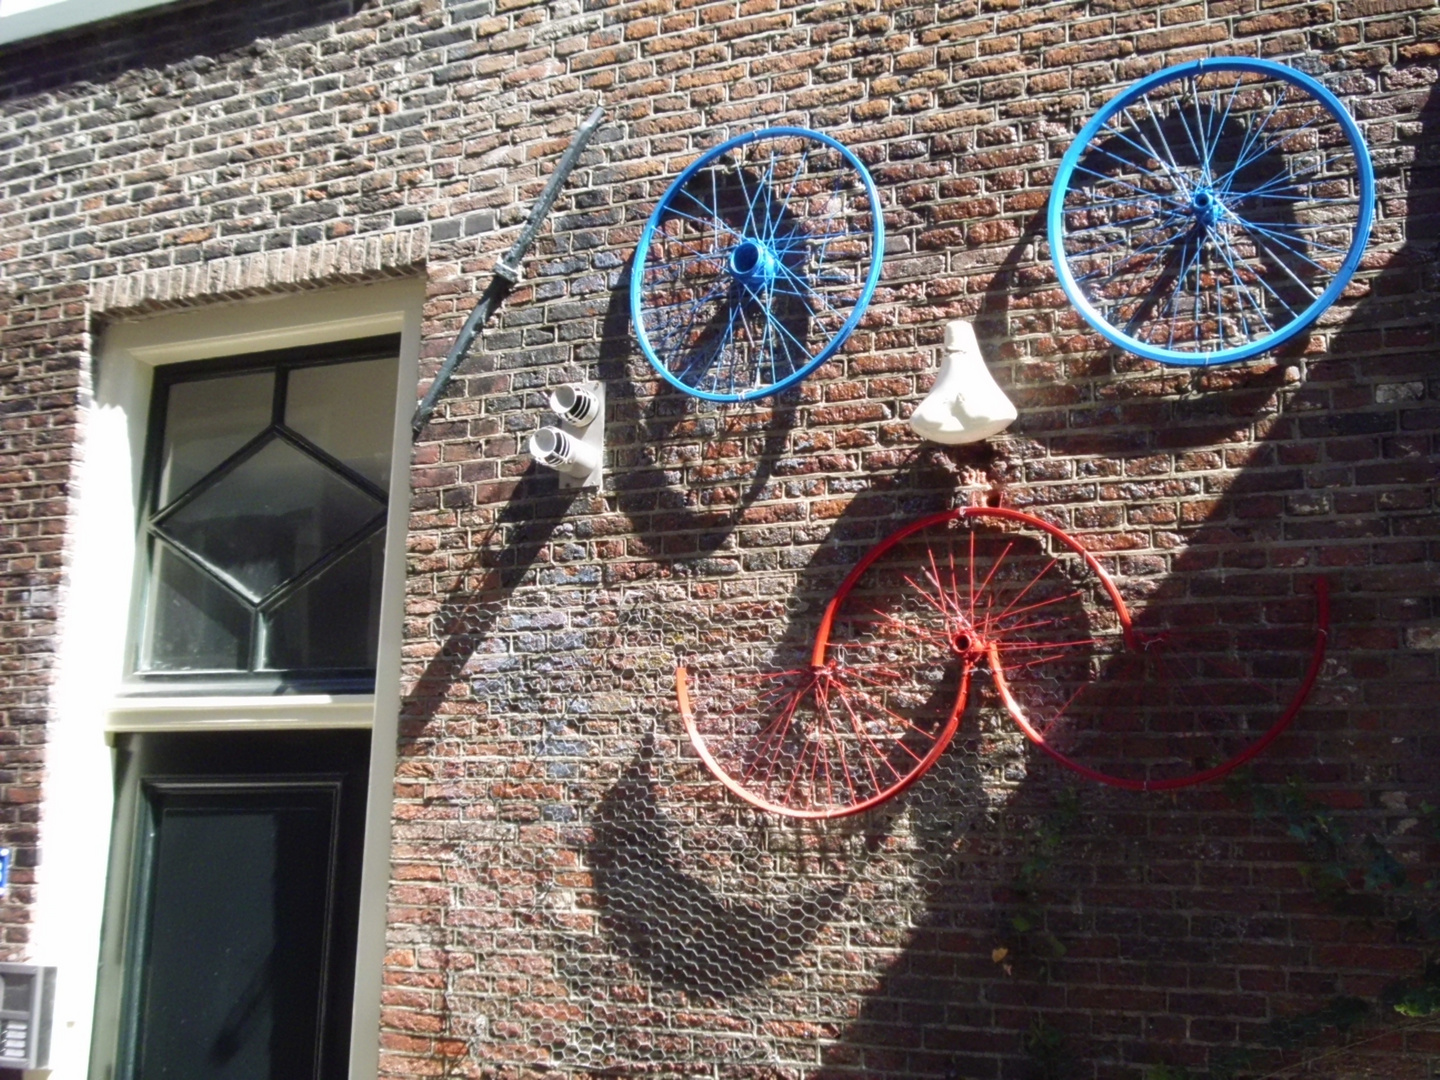 Was man in Amsterdam mit dem fiets sonst noch so anstellt